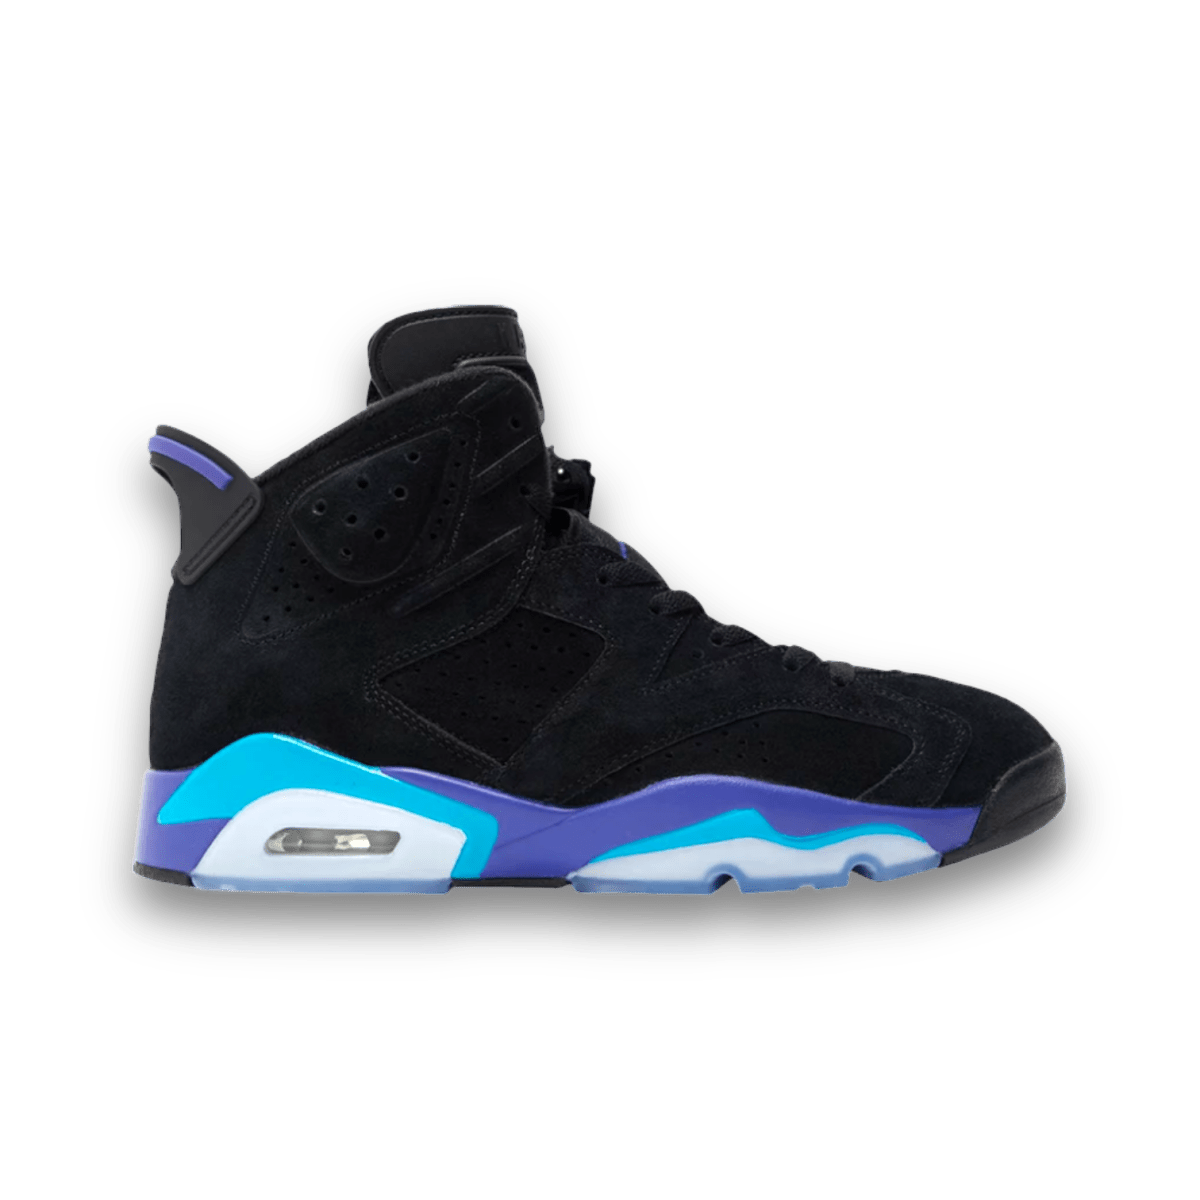 Jordan 6 Retro 'Aqua' - High Sneaker - Jawns on Fire Sneakers & Streetwear